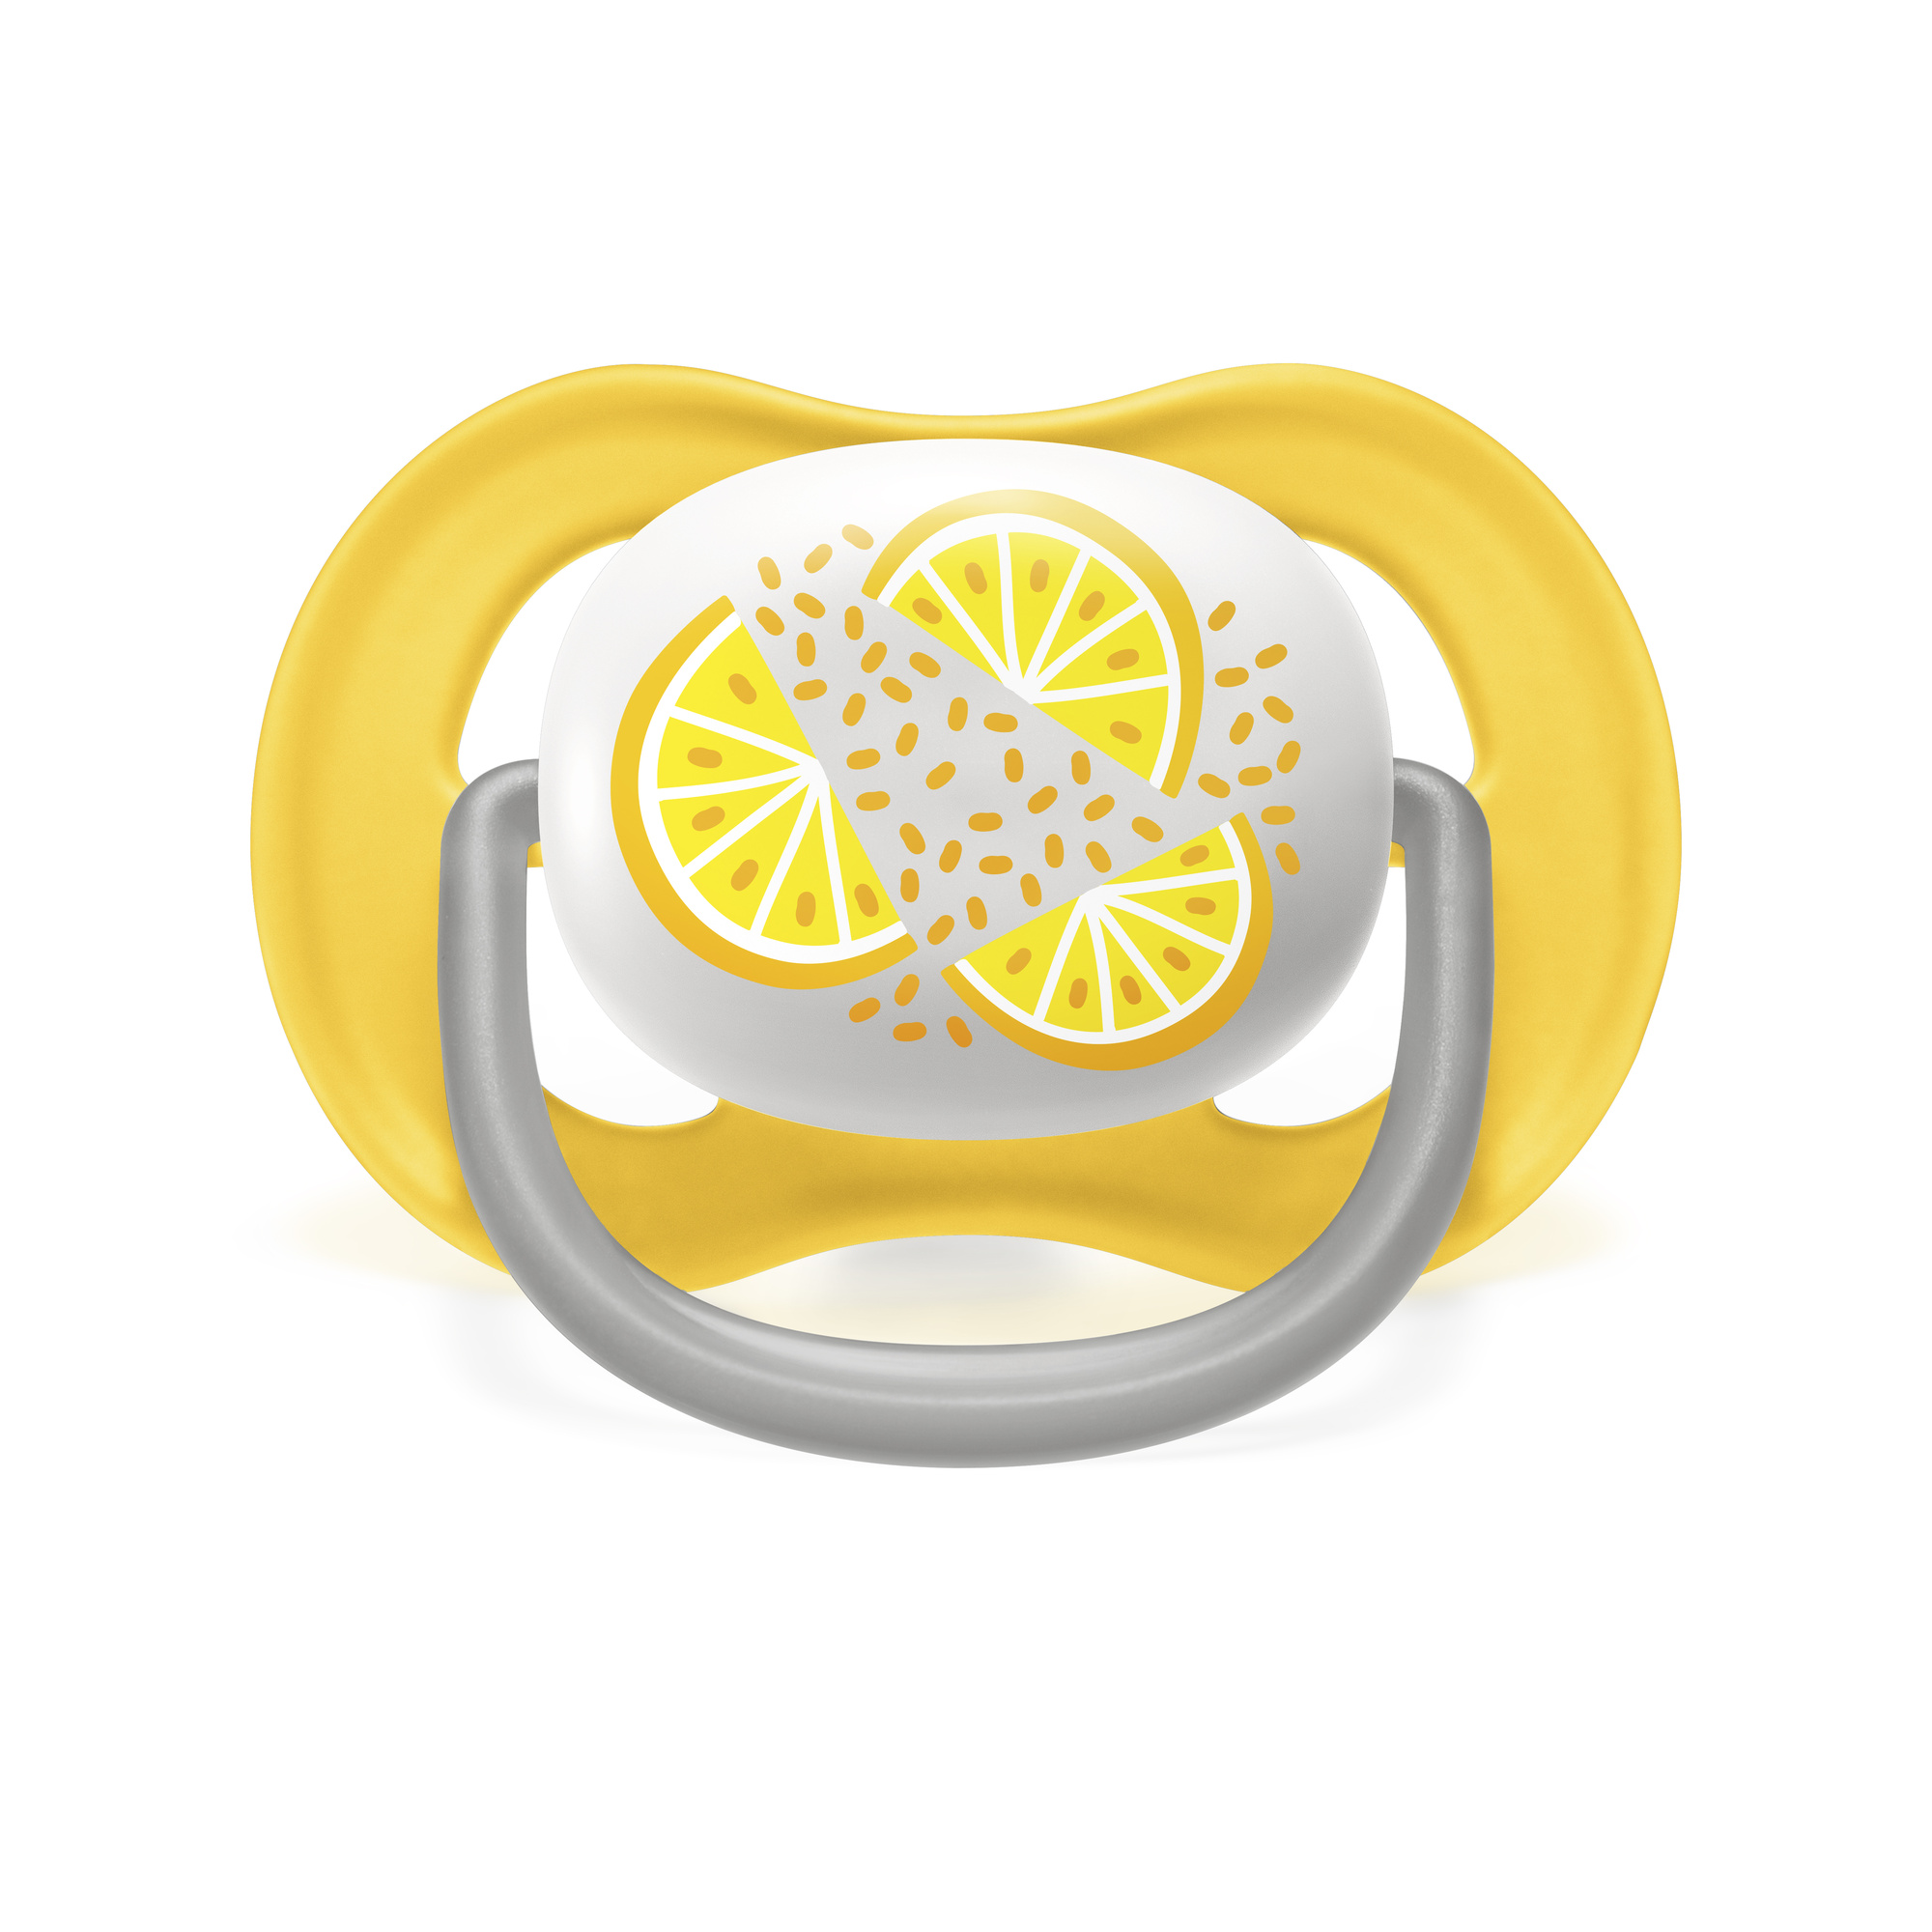 2 ciucci ultra air collection 6-18 mesi decorazione limone/arancia - philips avent - Avent